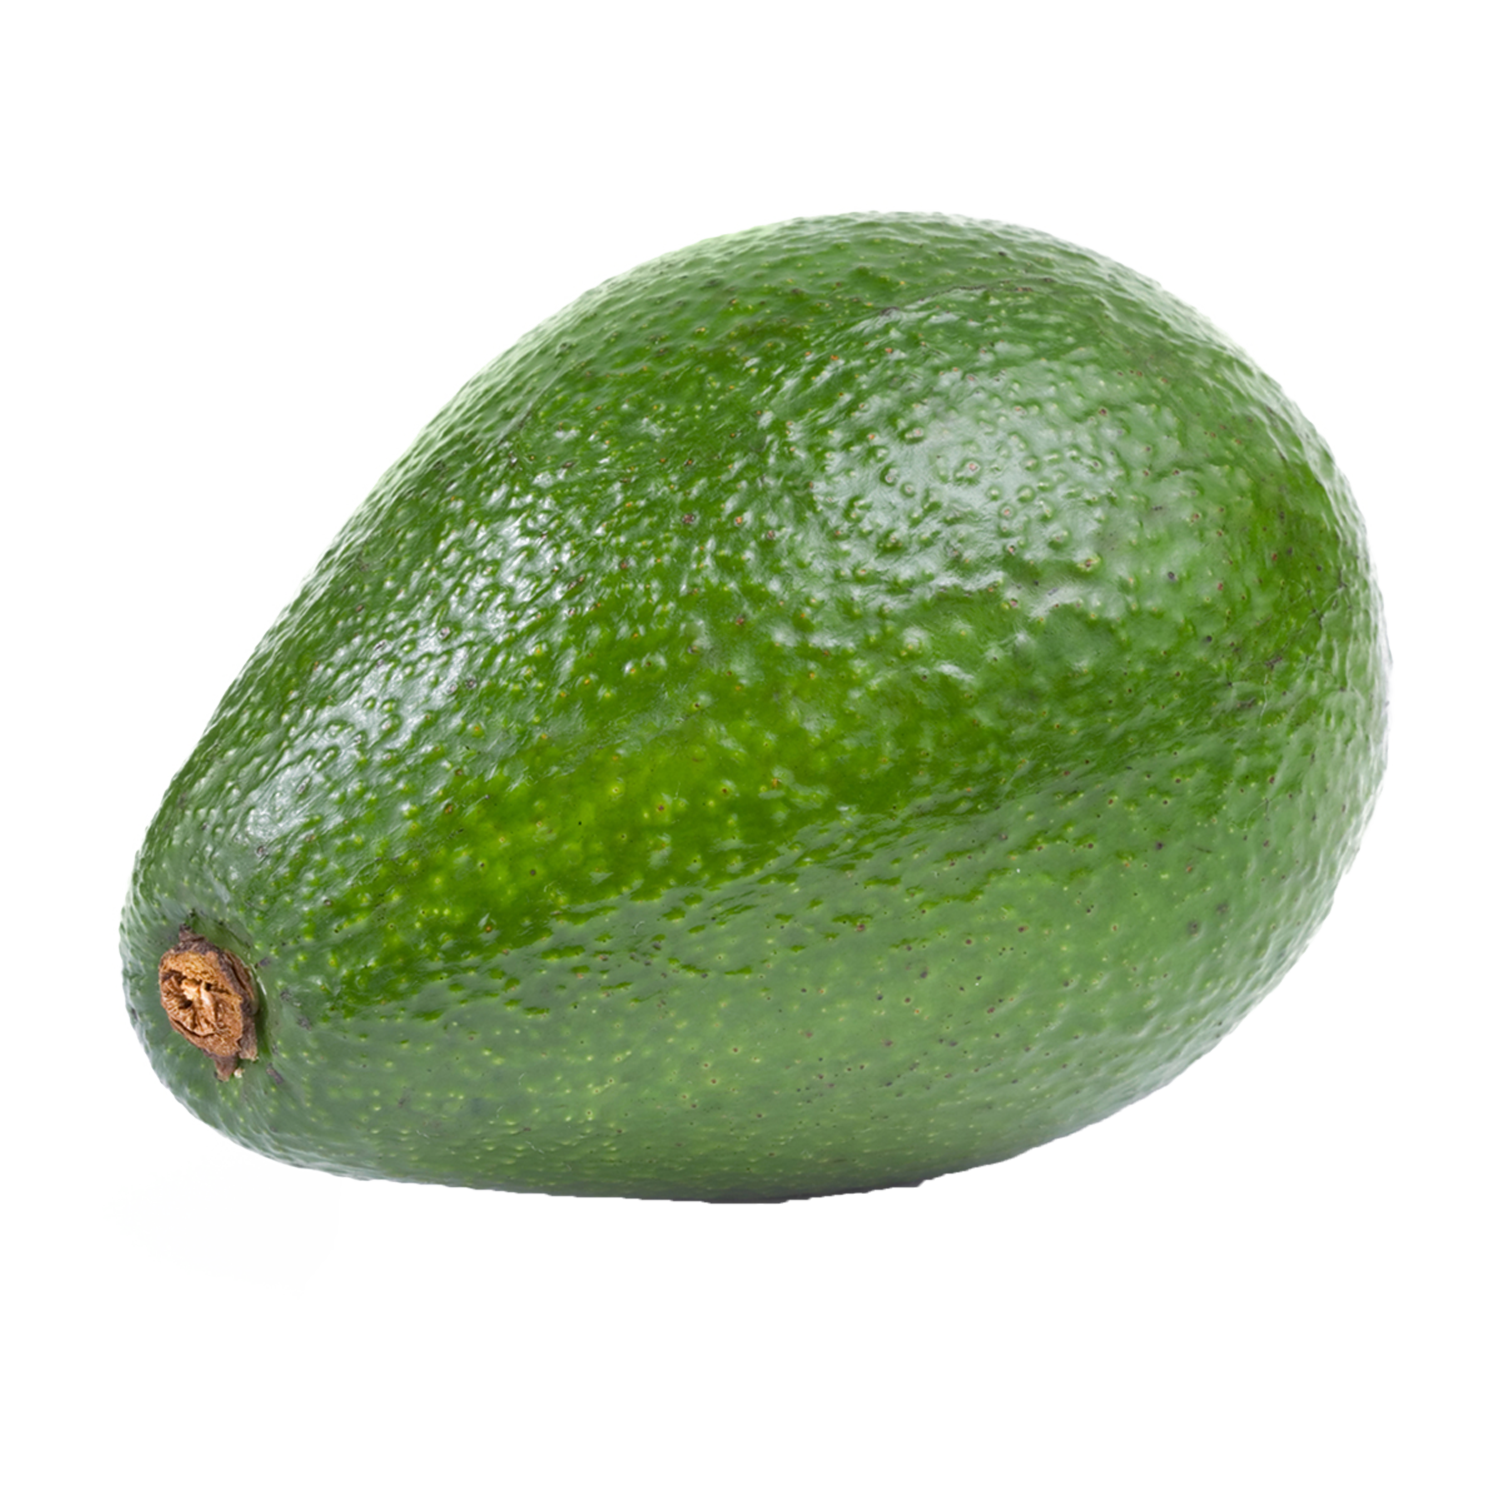 Avocado Transparent Photo